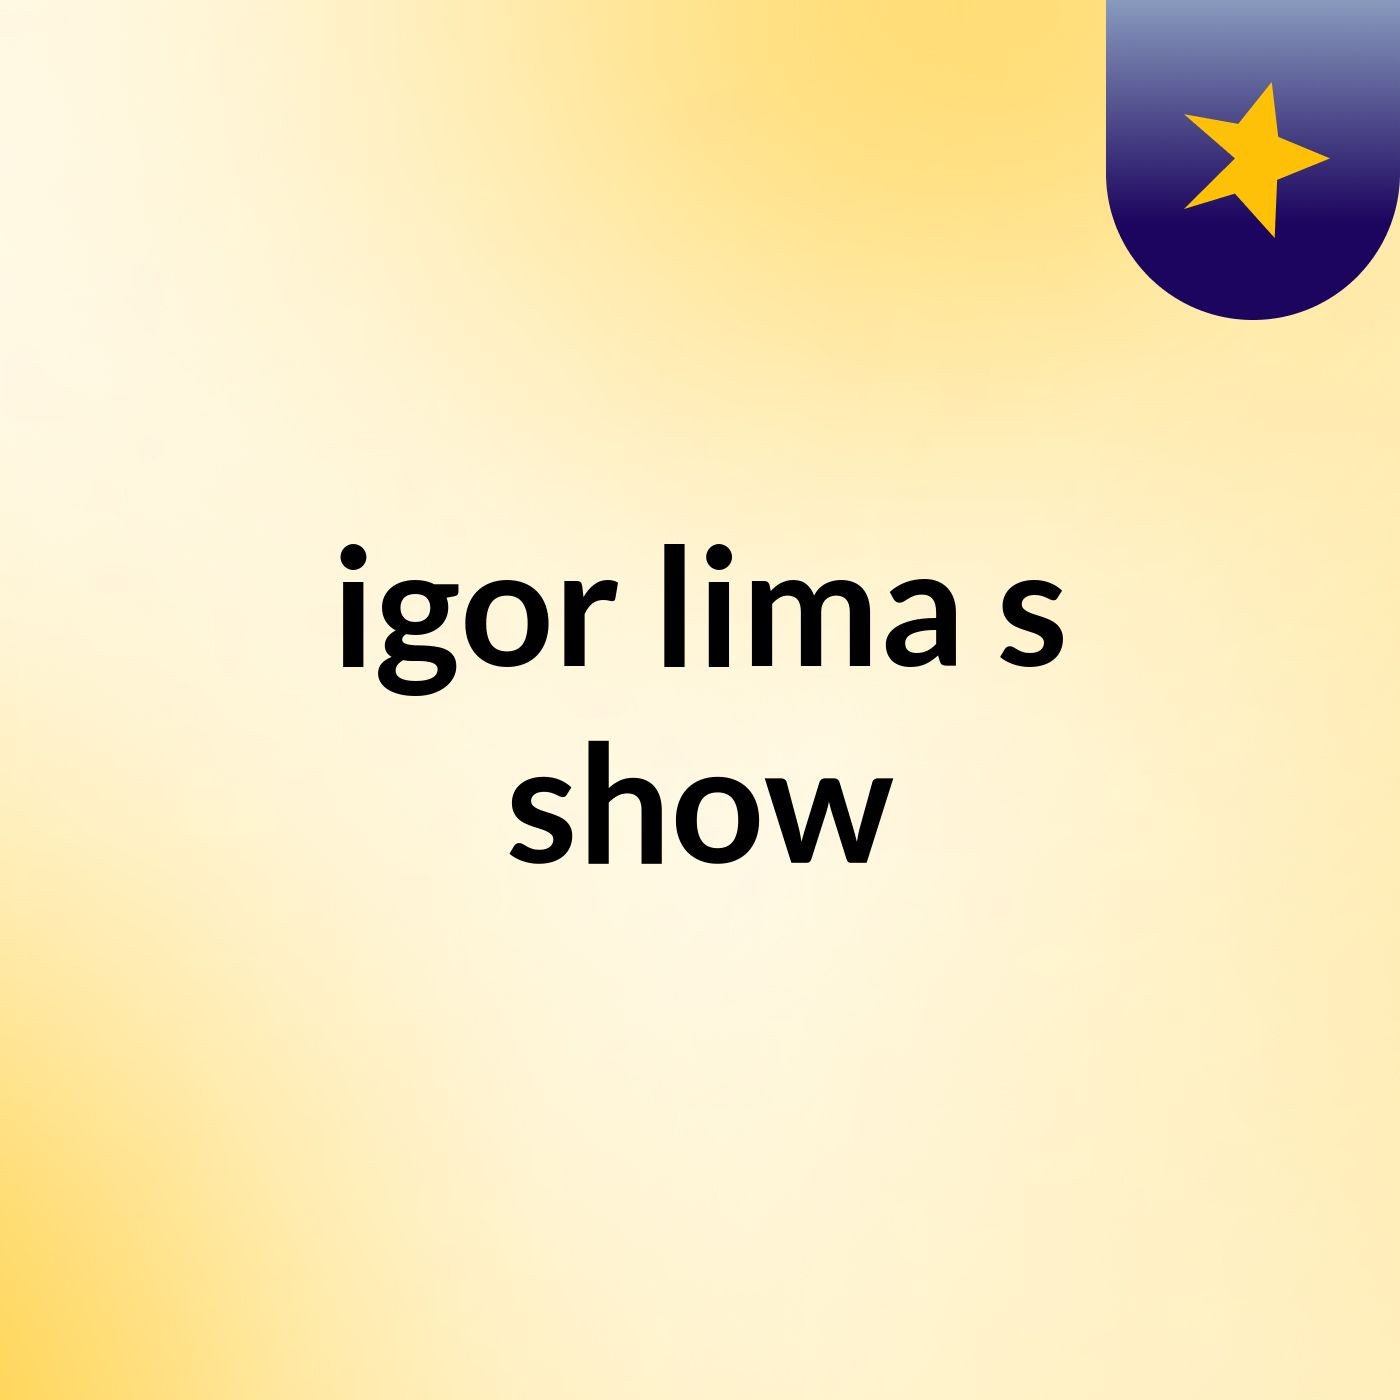 igor lima's show